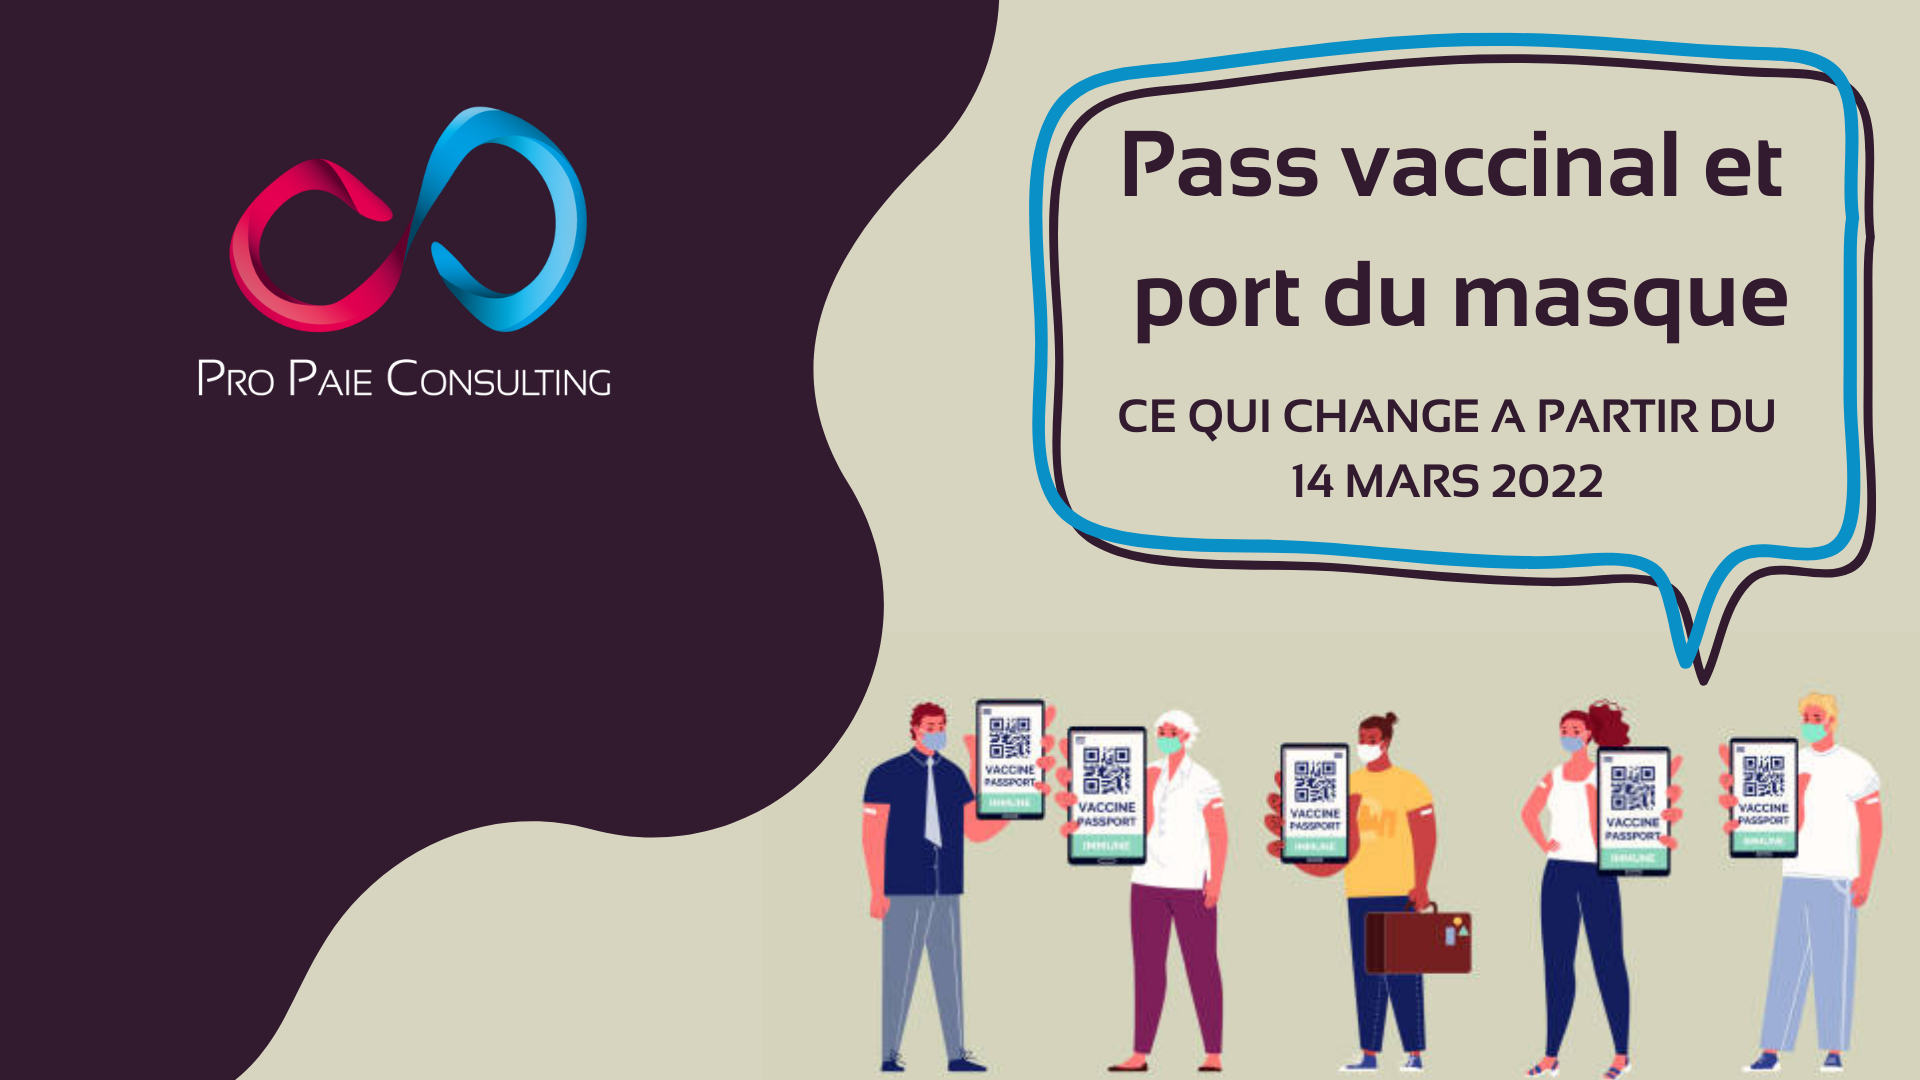 pass-vaccinal-et-port-du-masque-ce-qui-change-a-partir-du-14-mars-2022